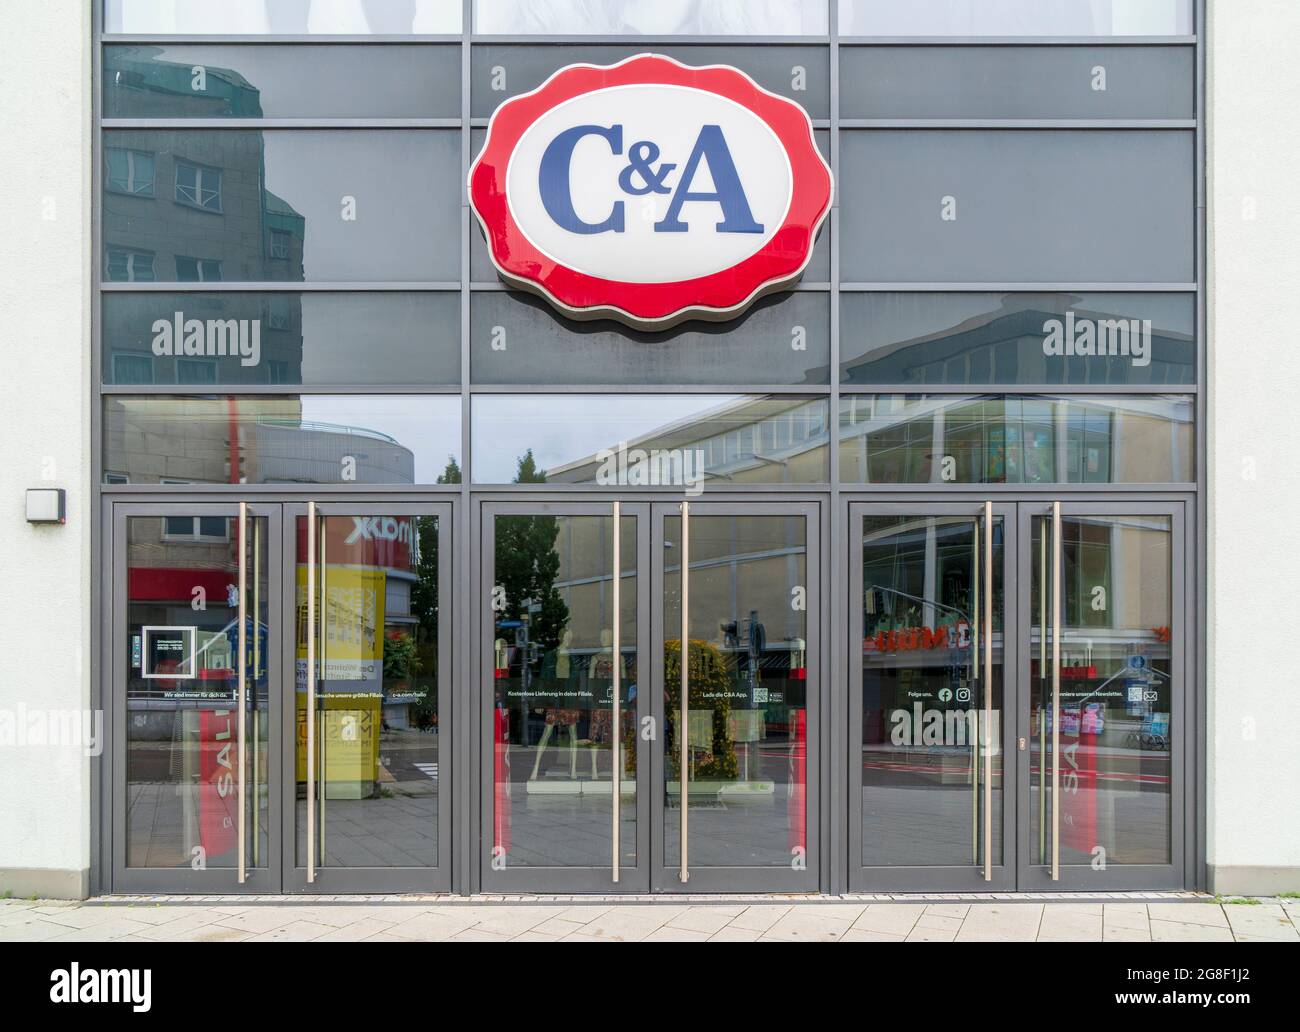 Filiale der Firma C&A in Kempten Stock Photo